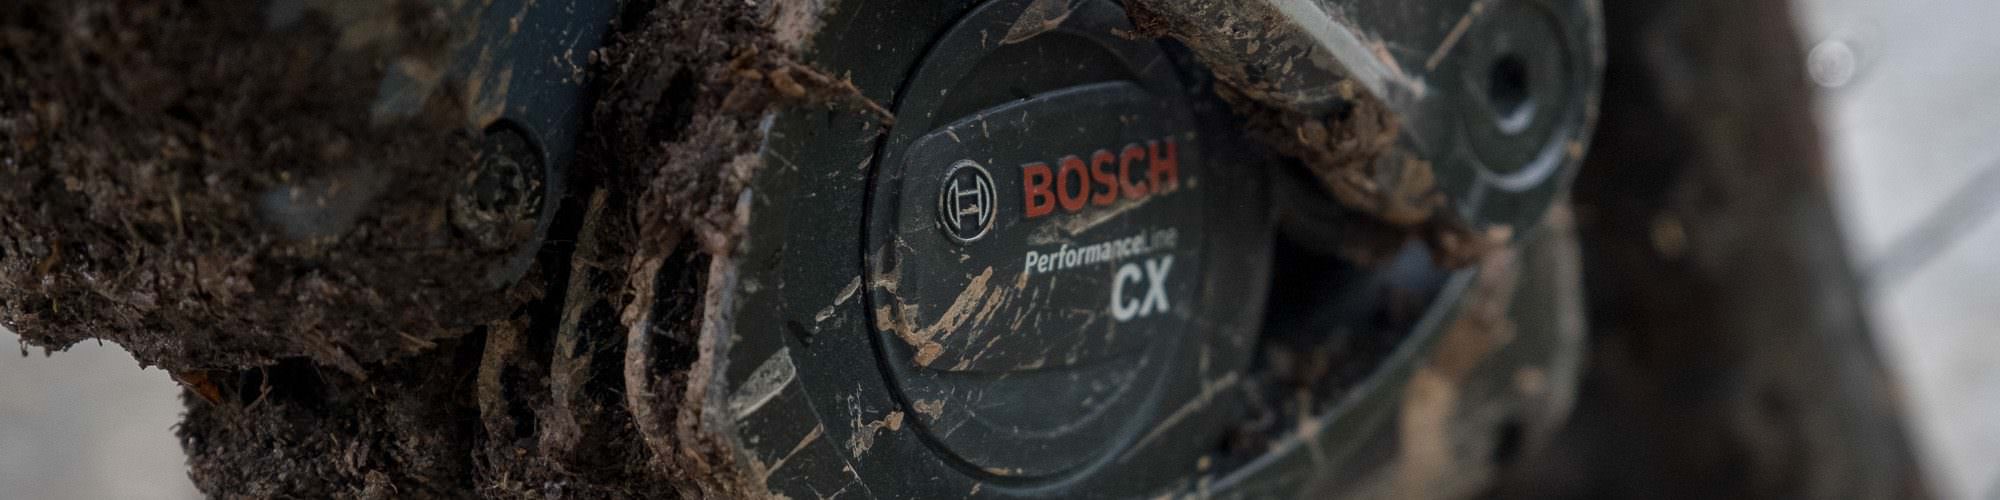 bosch highline firmware update